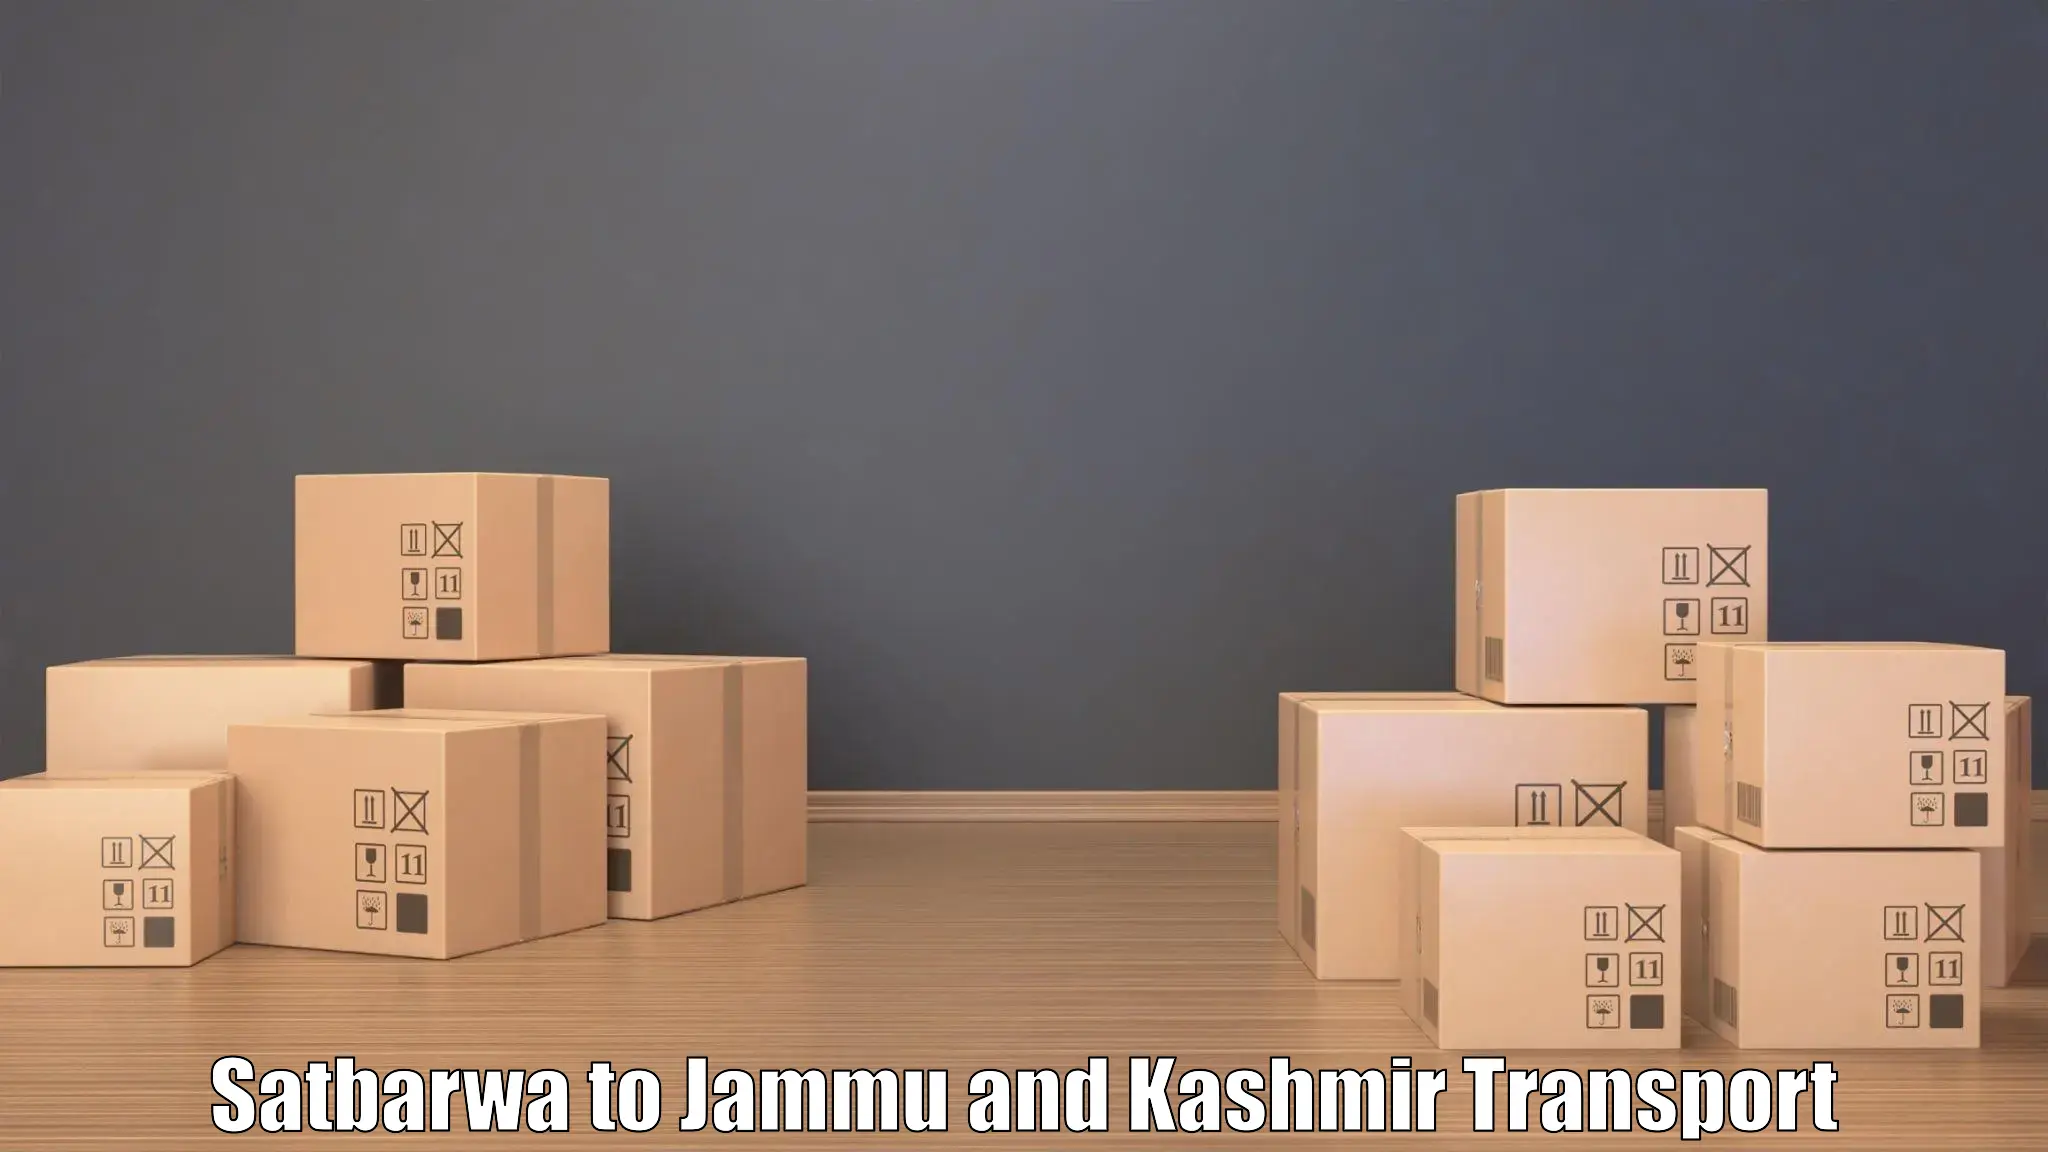 Road transport online services Satbarwa to Srinagar Kashmir